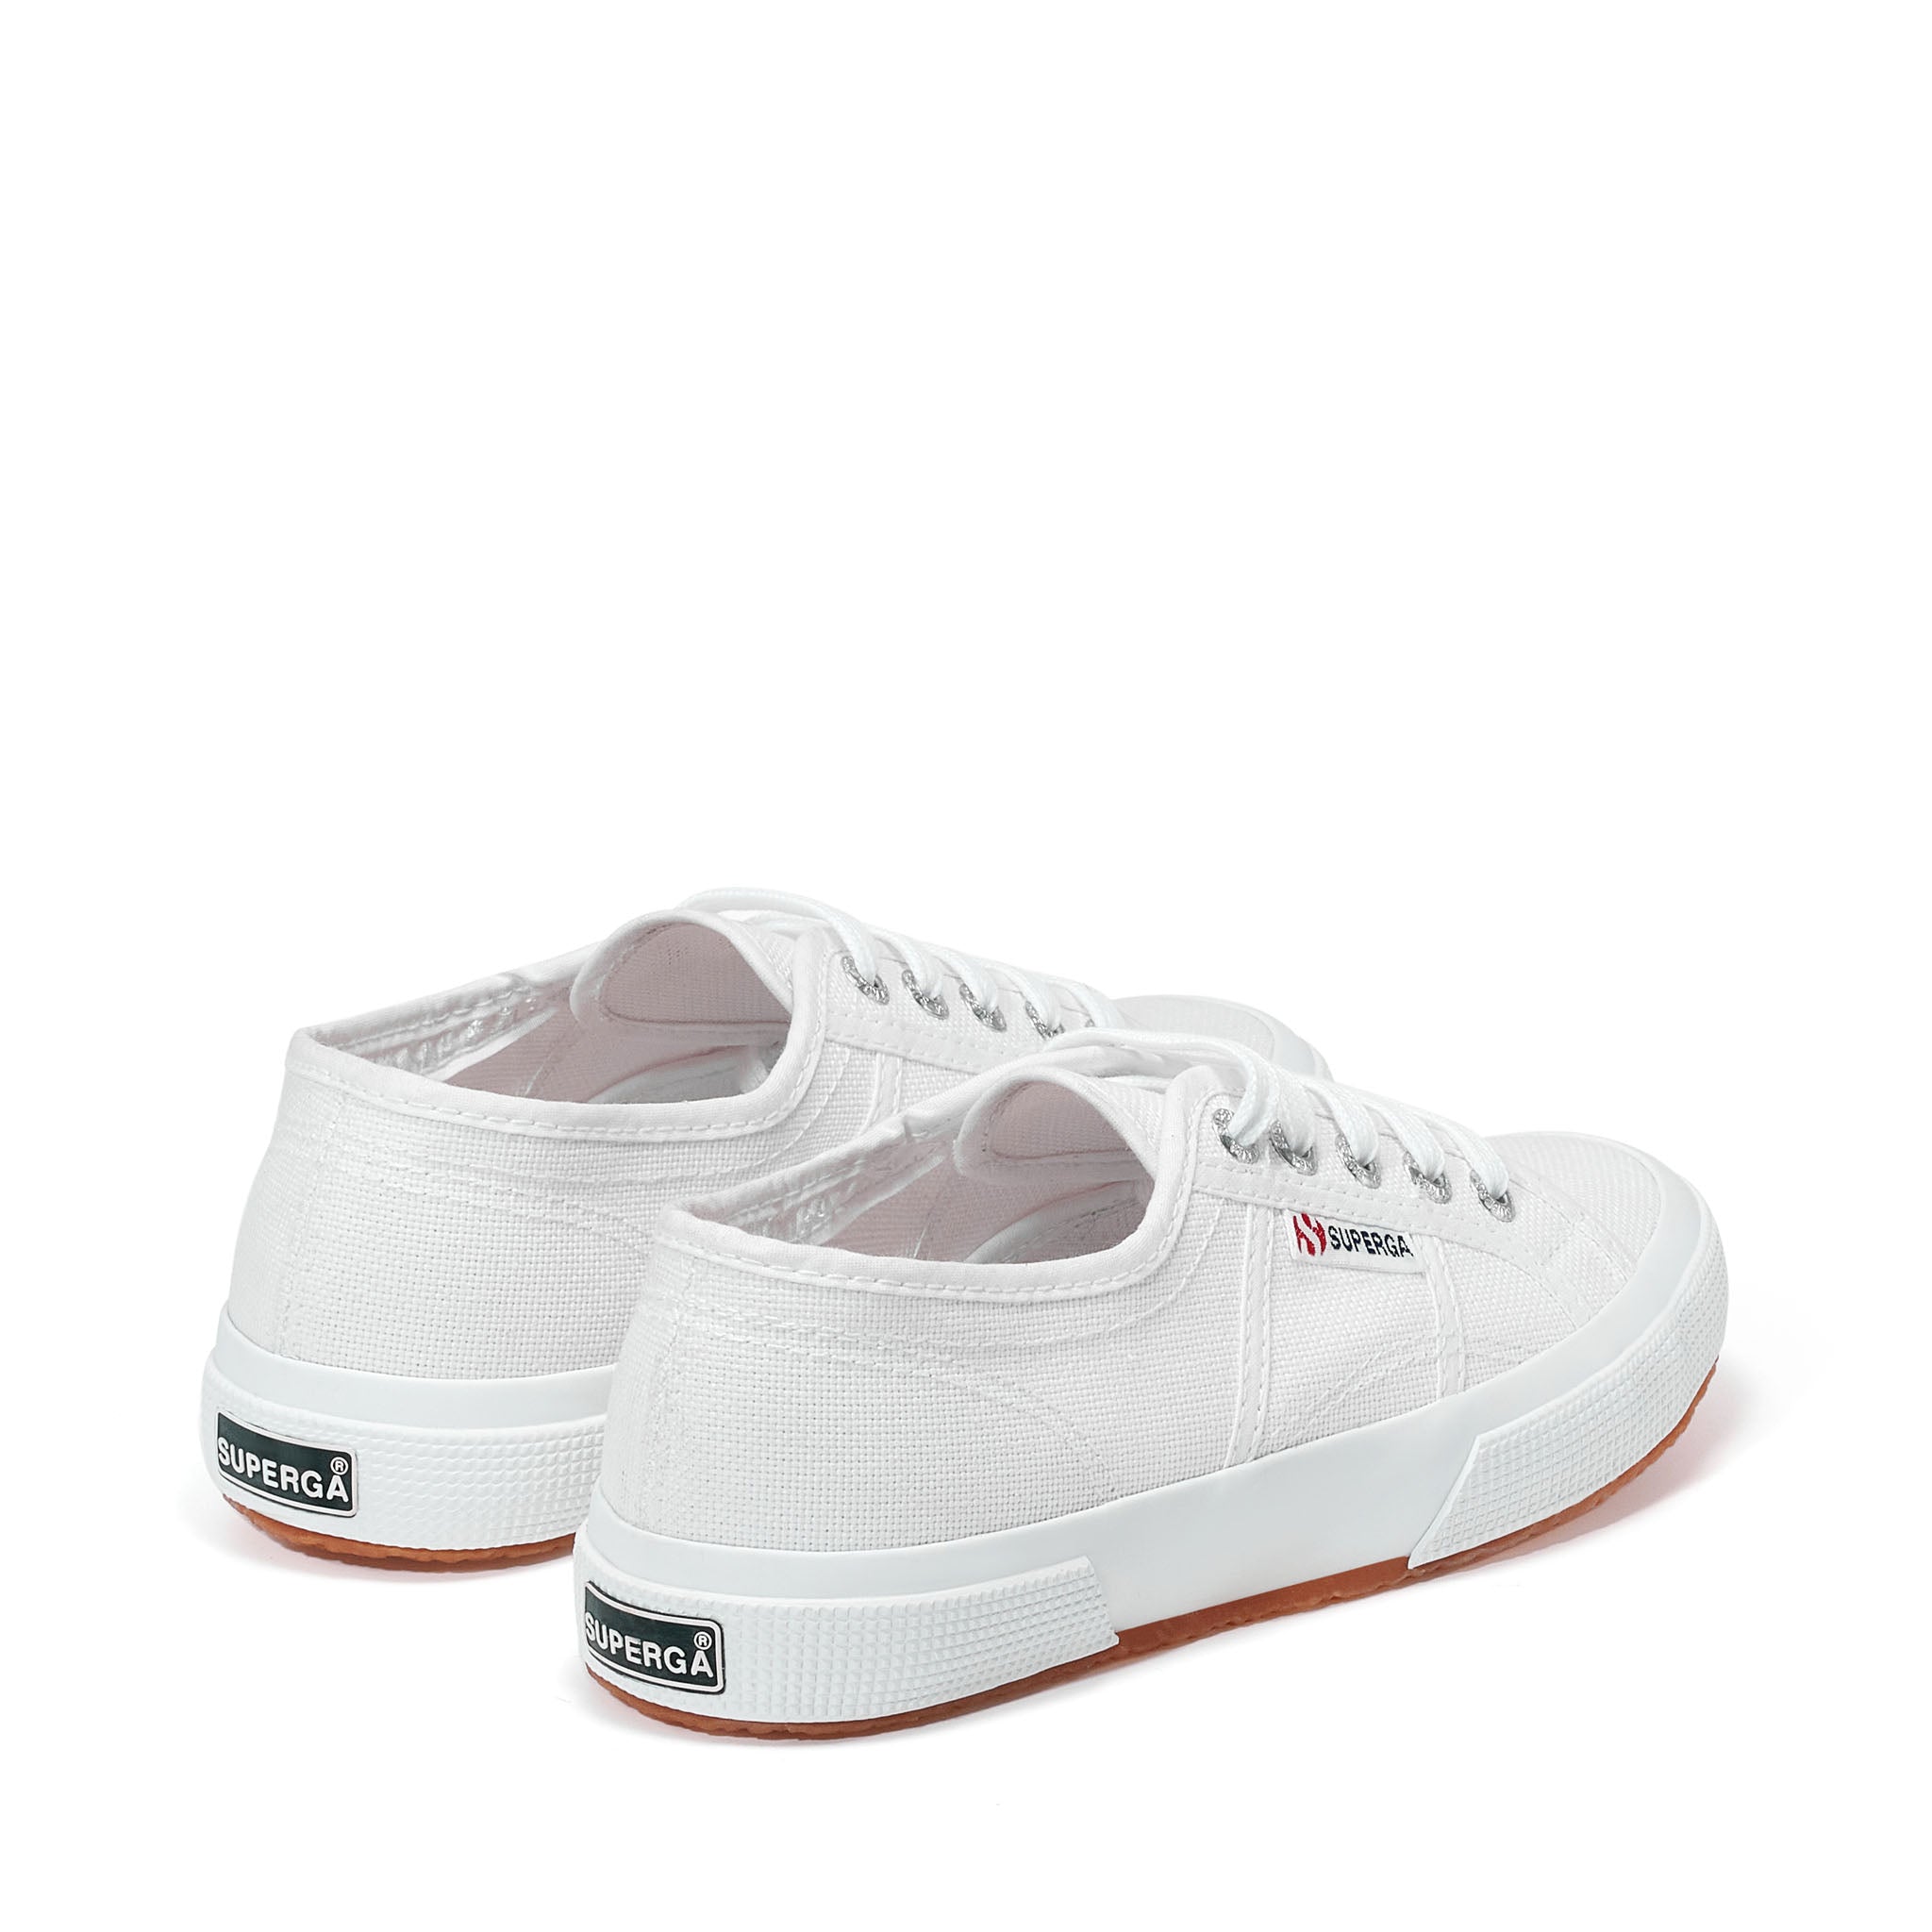 Superga - 2750 Cotu Classic Sneakers - White – Superga Canada